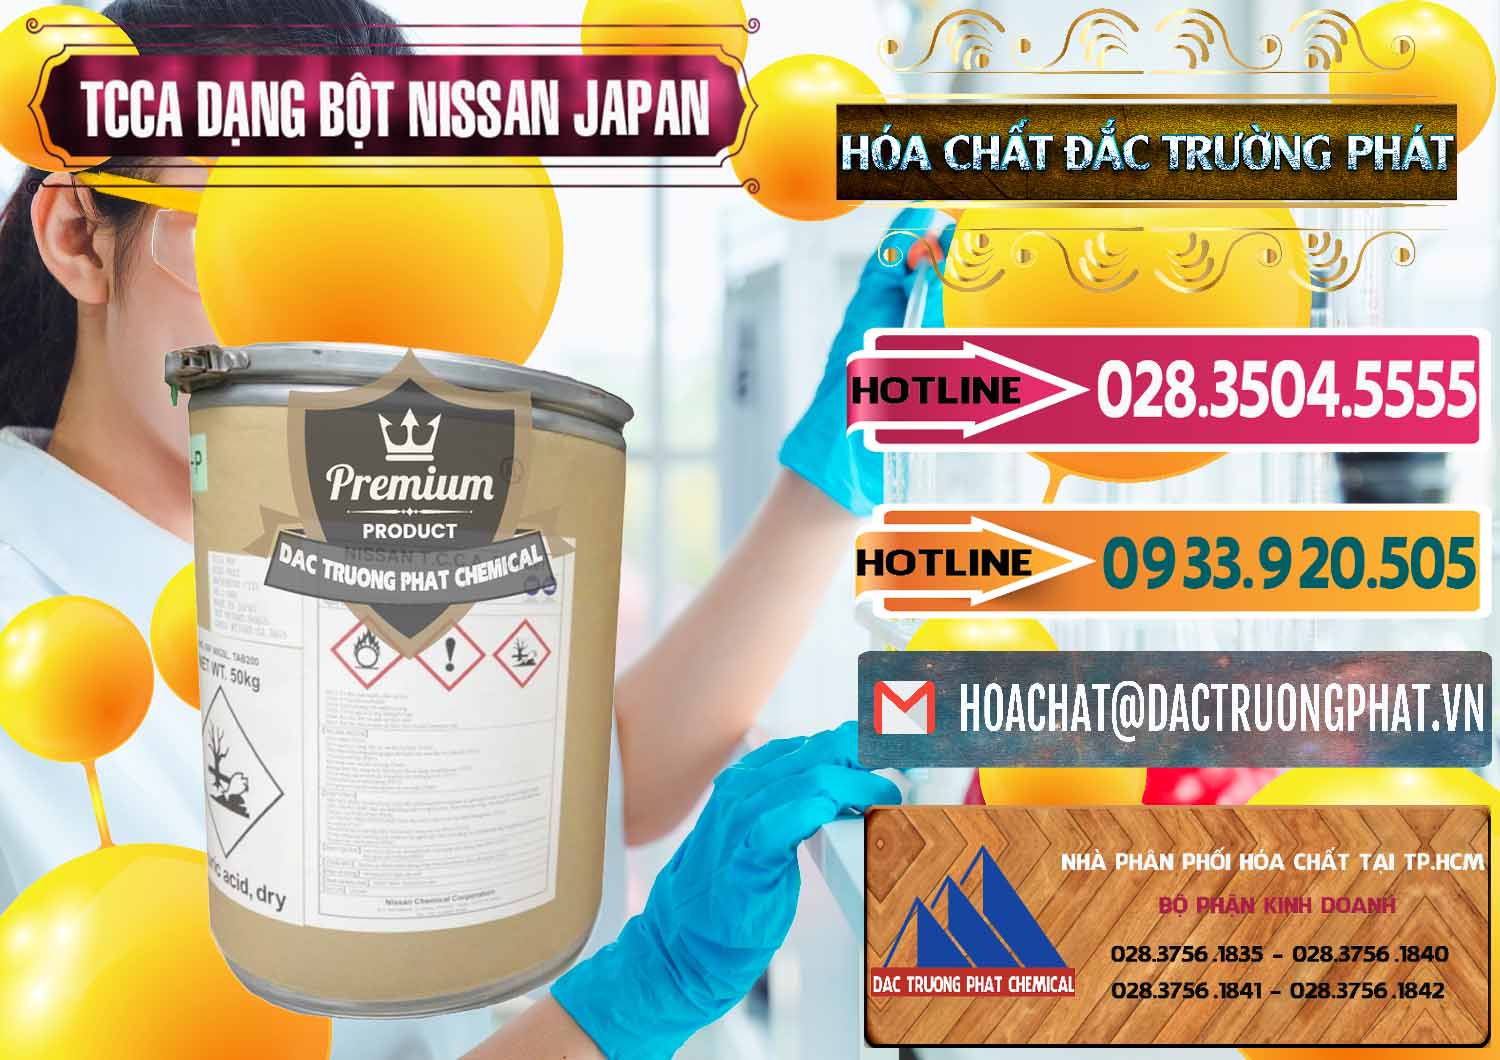 Công ty chuyên cung cấp - bán TCCA - Acid Trichloroisocyanuric 90% Dạng Bột Nissan Nhật Bản Japan - 0375 - Công ty phân phối - bán hóa chất tại TP.HCM - dactruongphat.vn